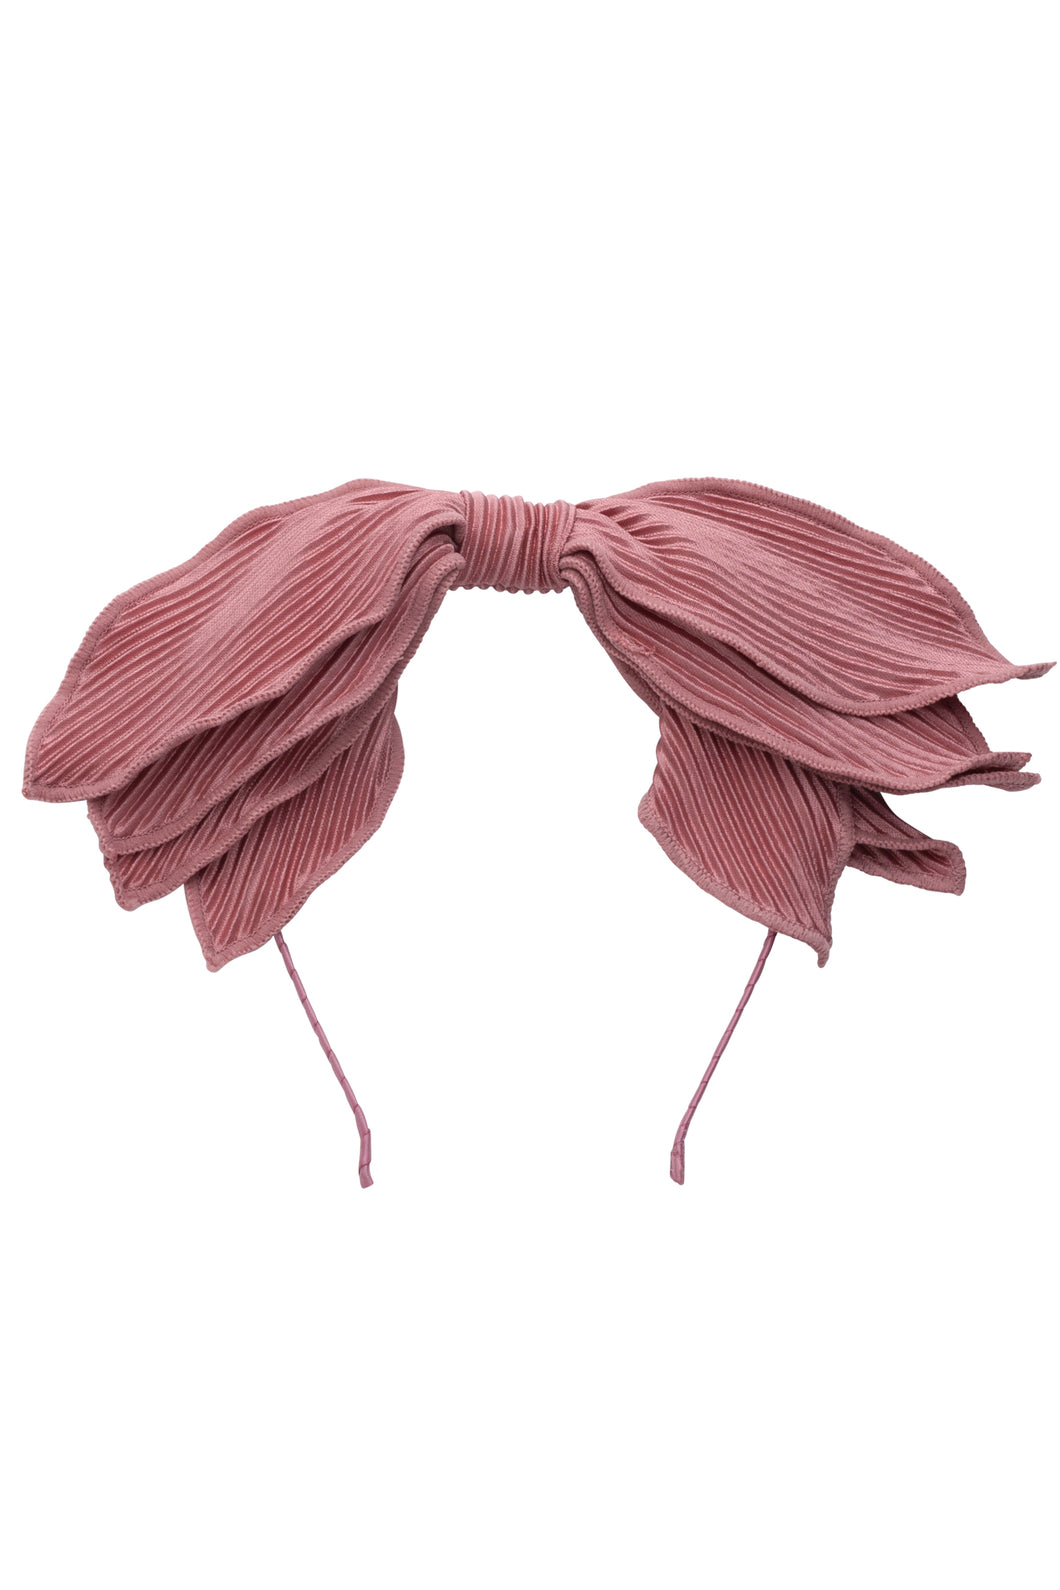 Spring Petals Headband - Rose